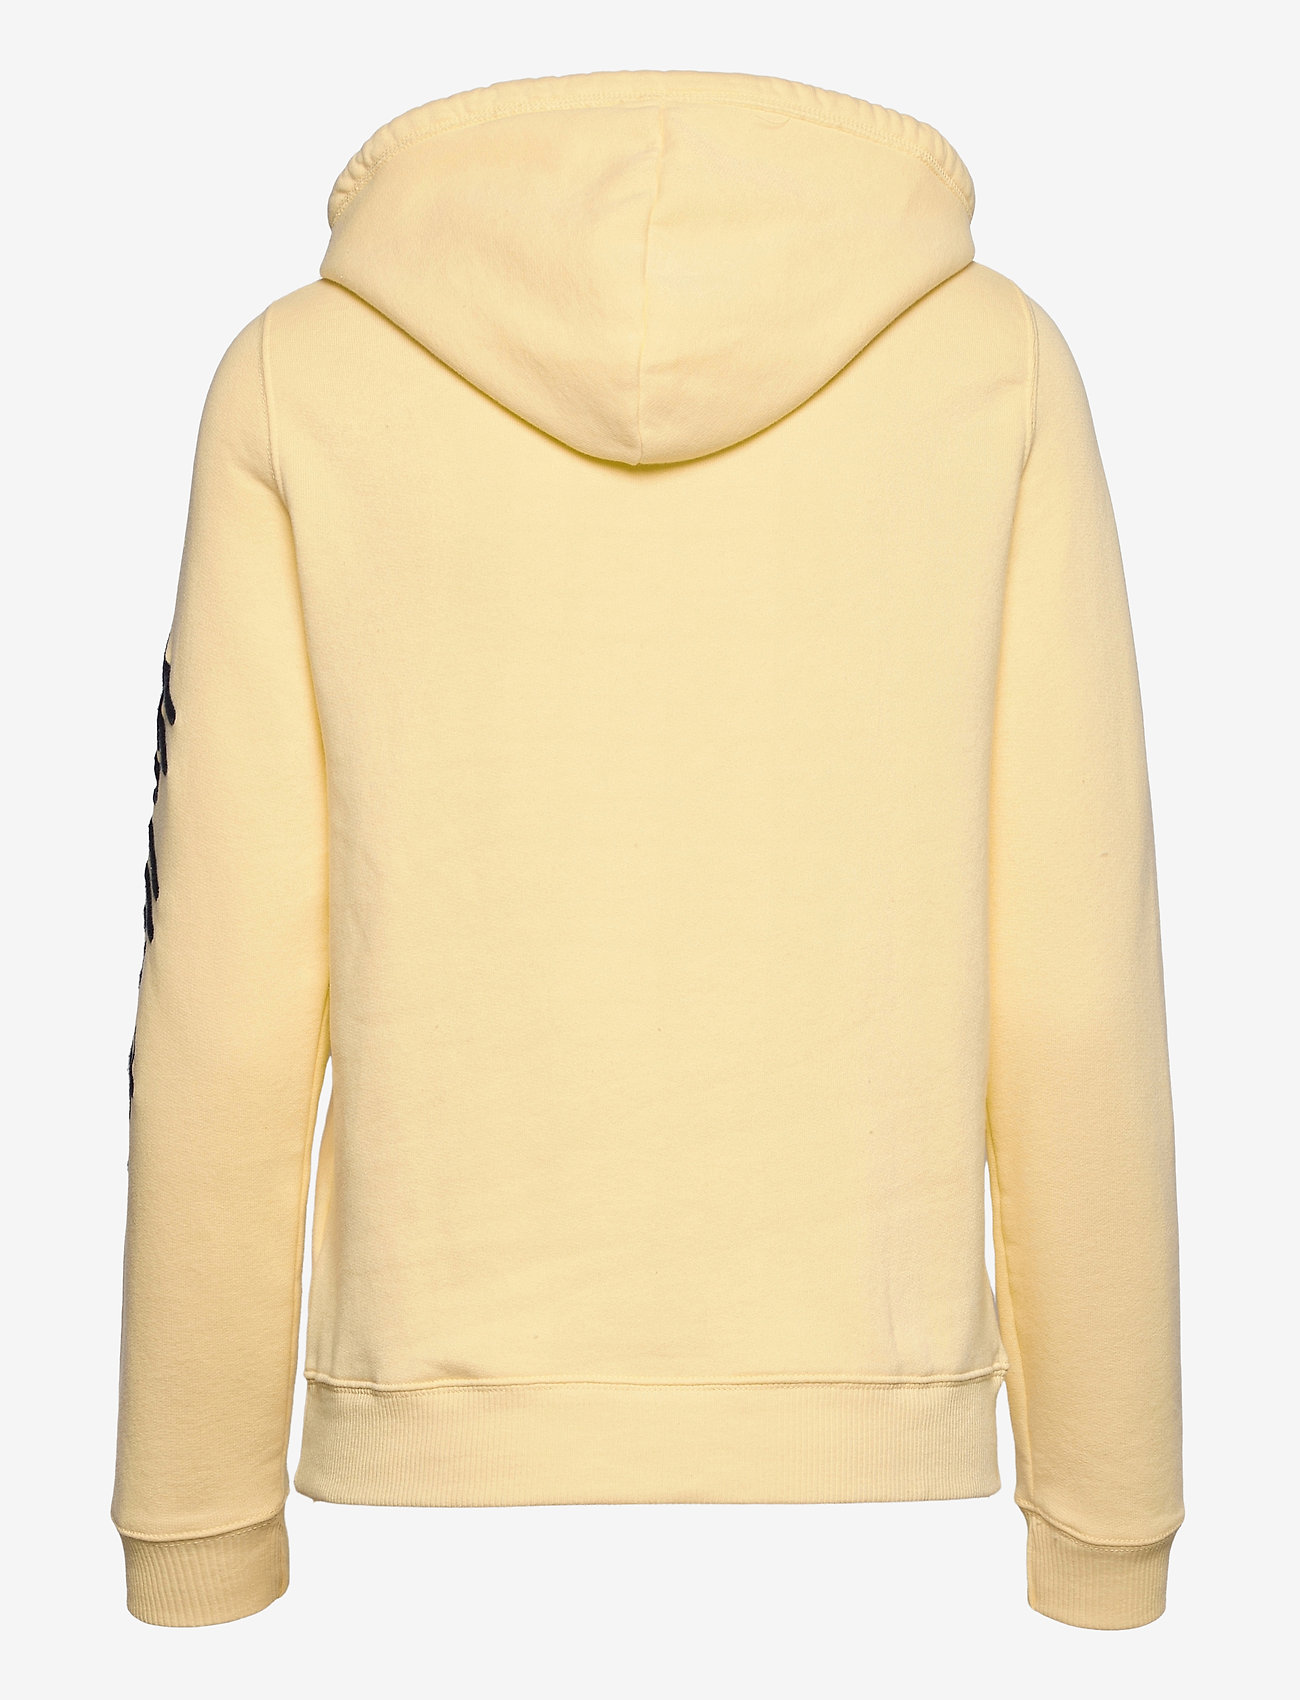 hollister yellow sweatshirt